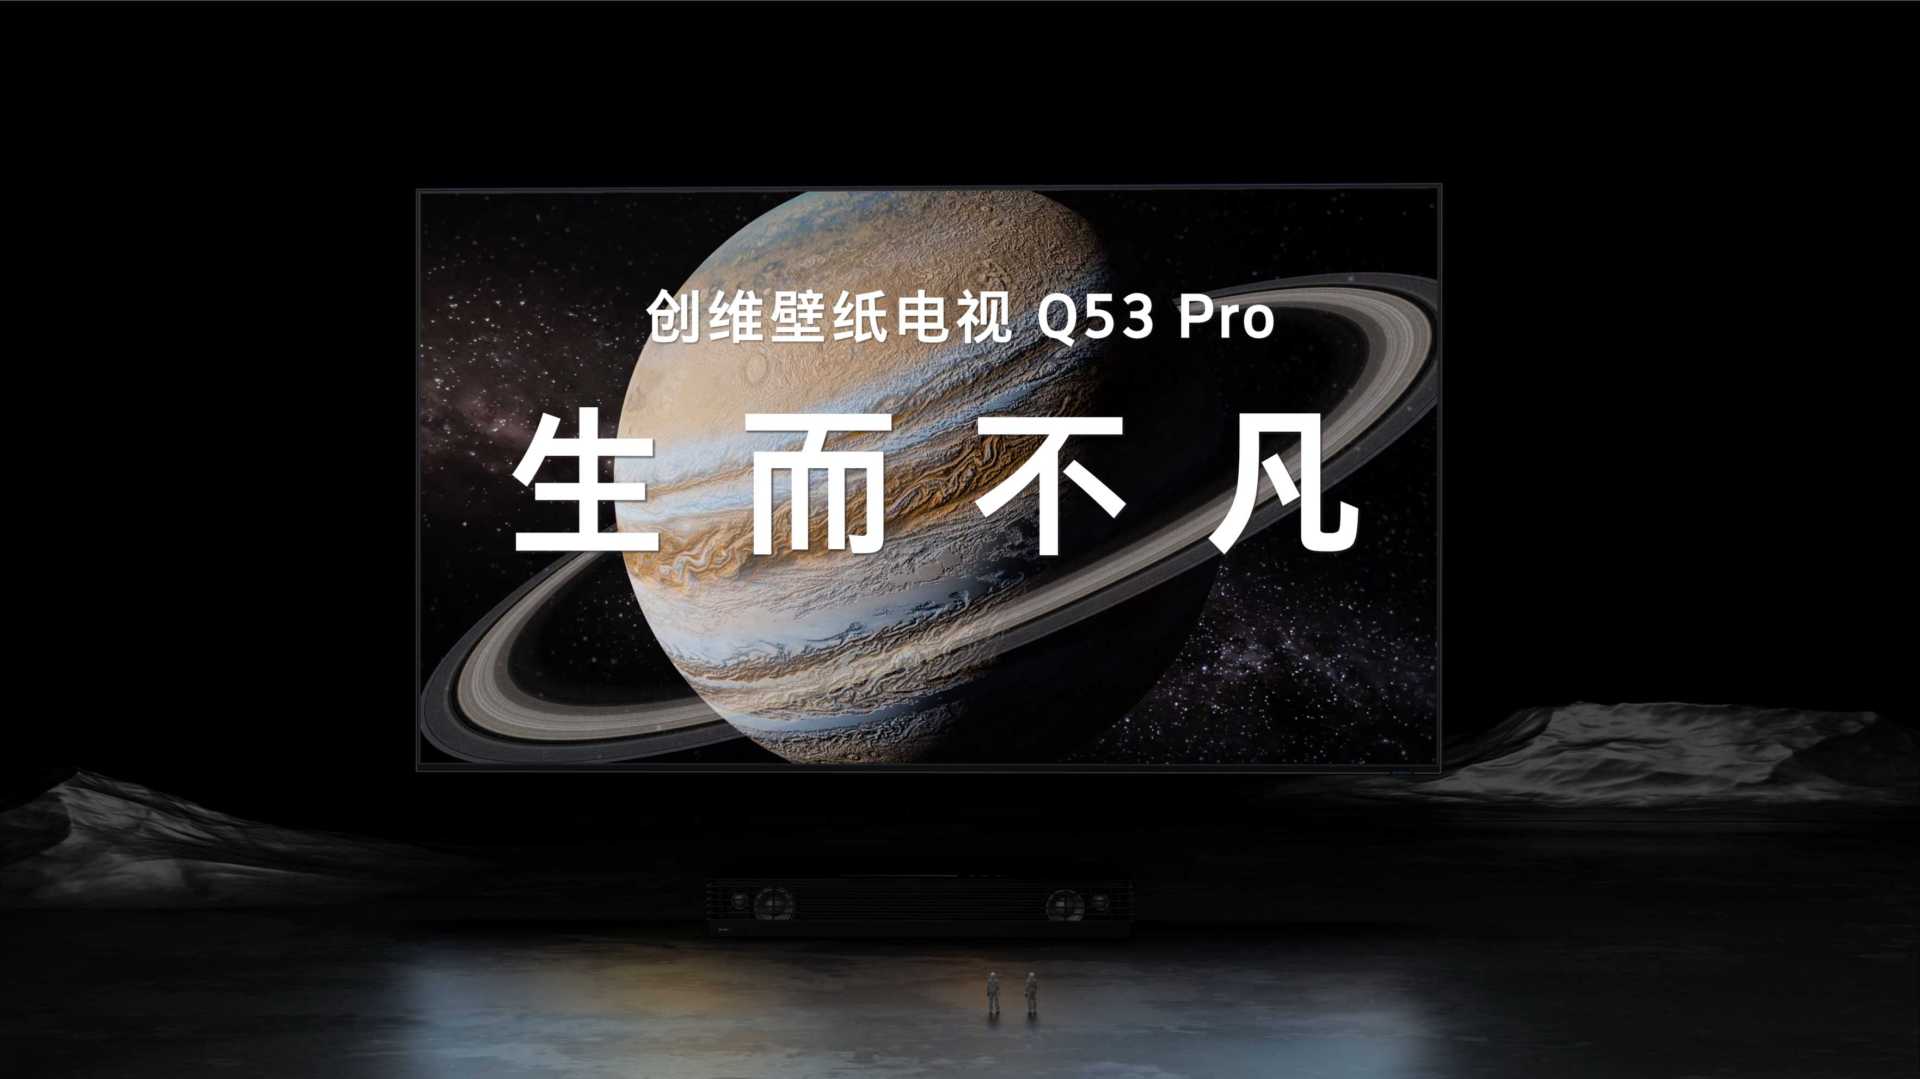 创维电视 | Q53 Pro产品视频 <生而不凡>